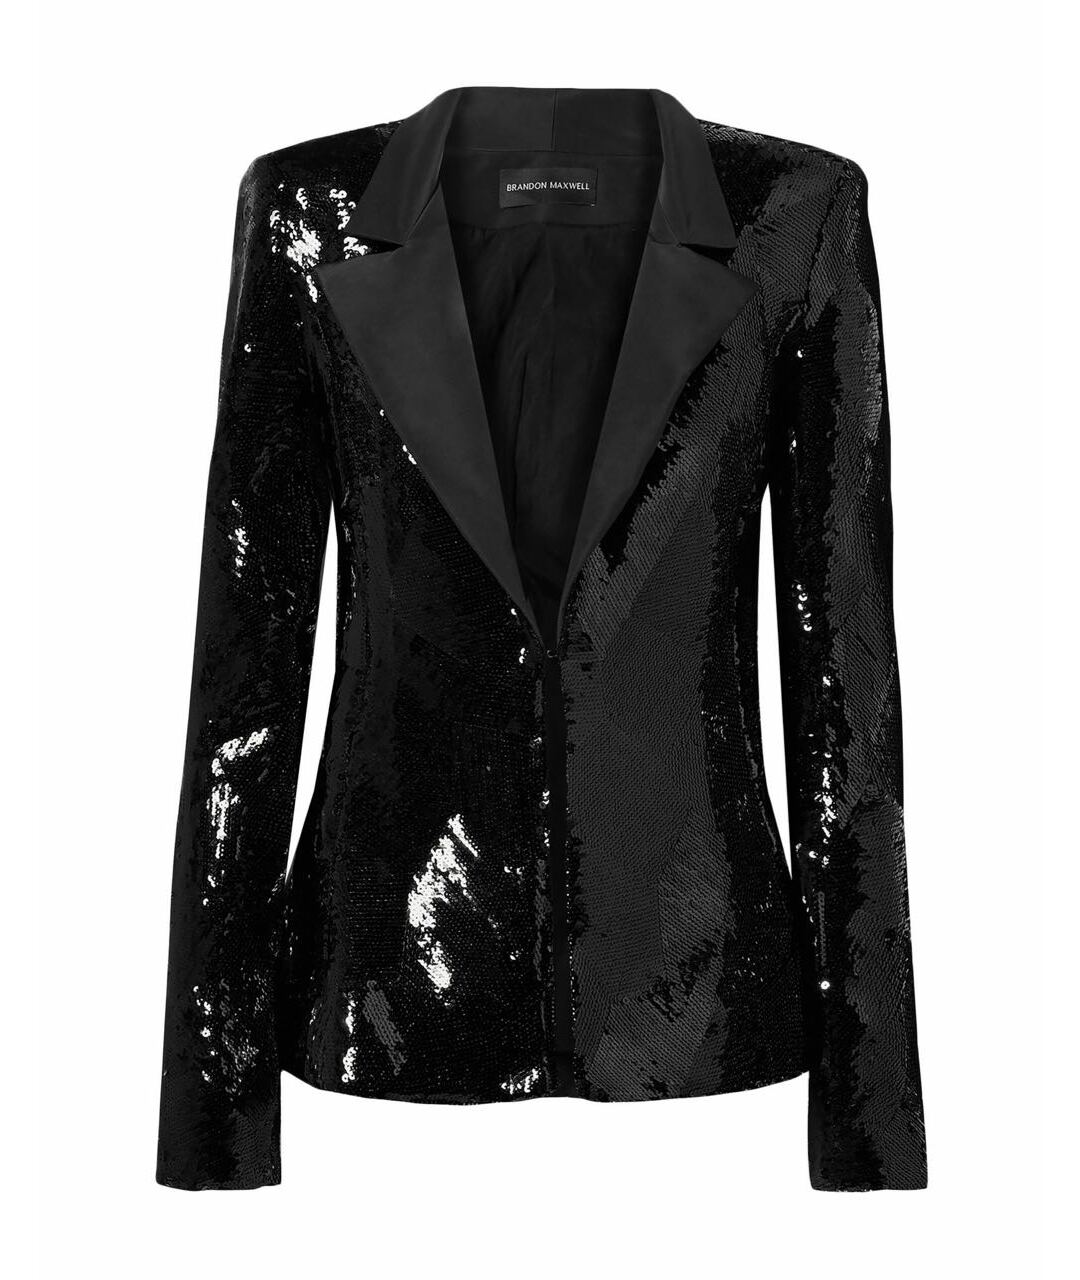 BRANDON MAXWELL Черный шелковый жакет/пиджак, фото 1